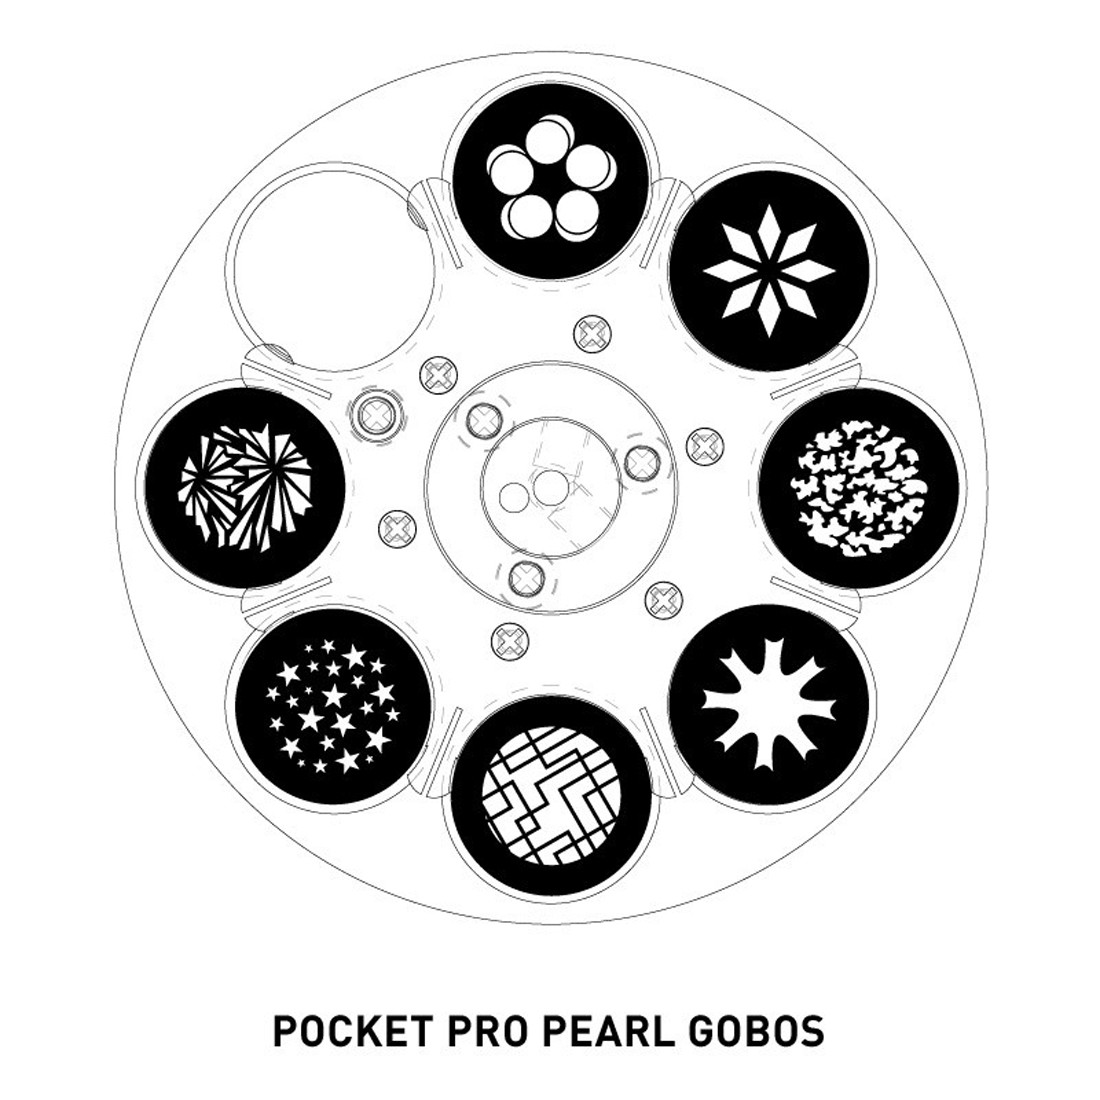 American DJ Pocket Pro Pearl